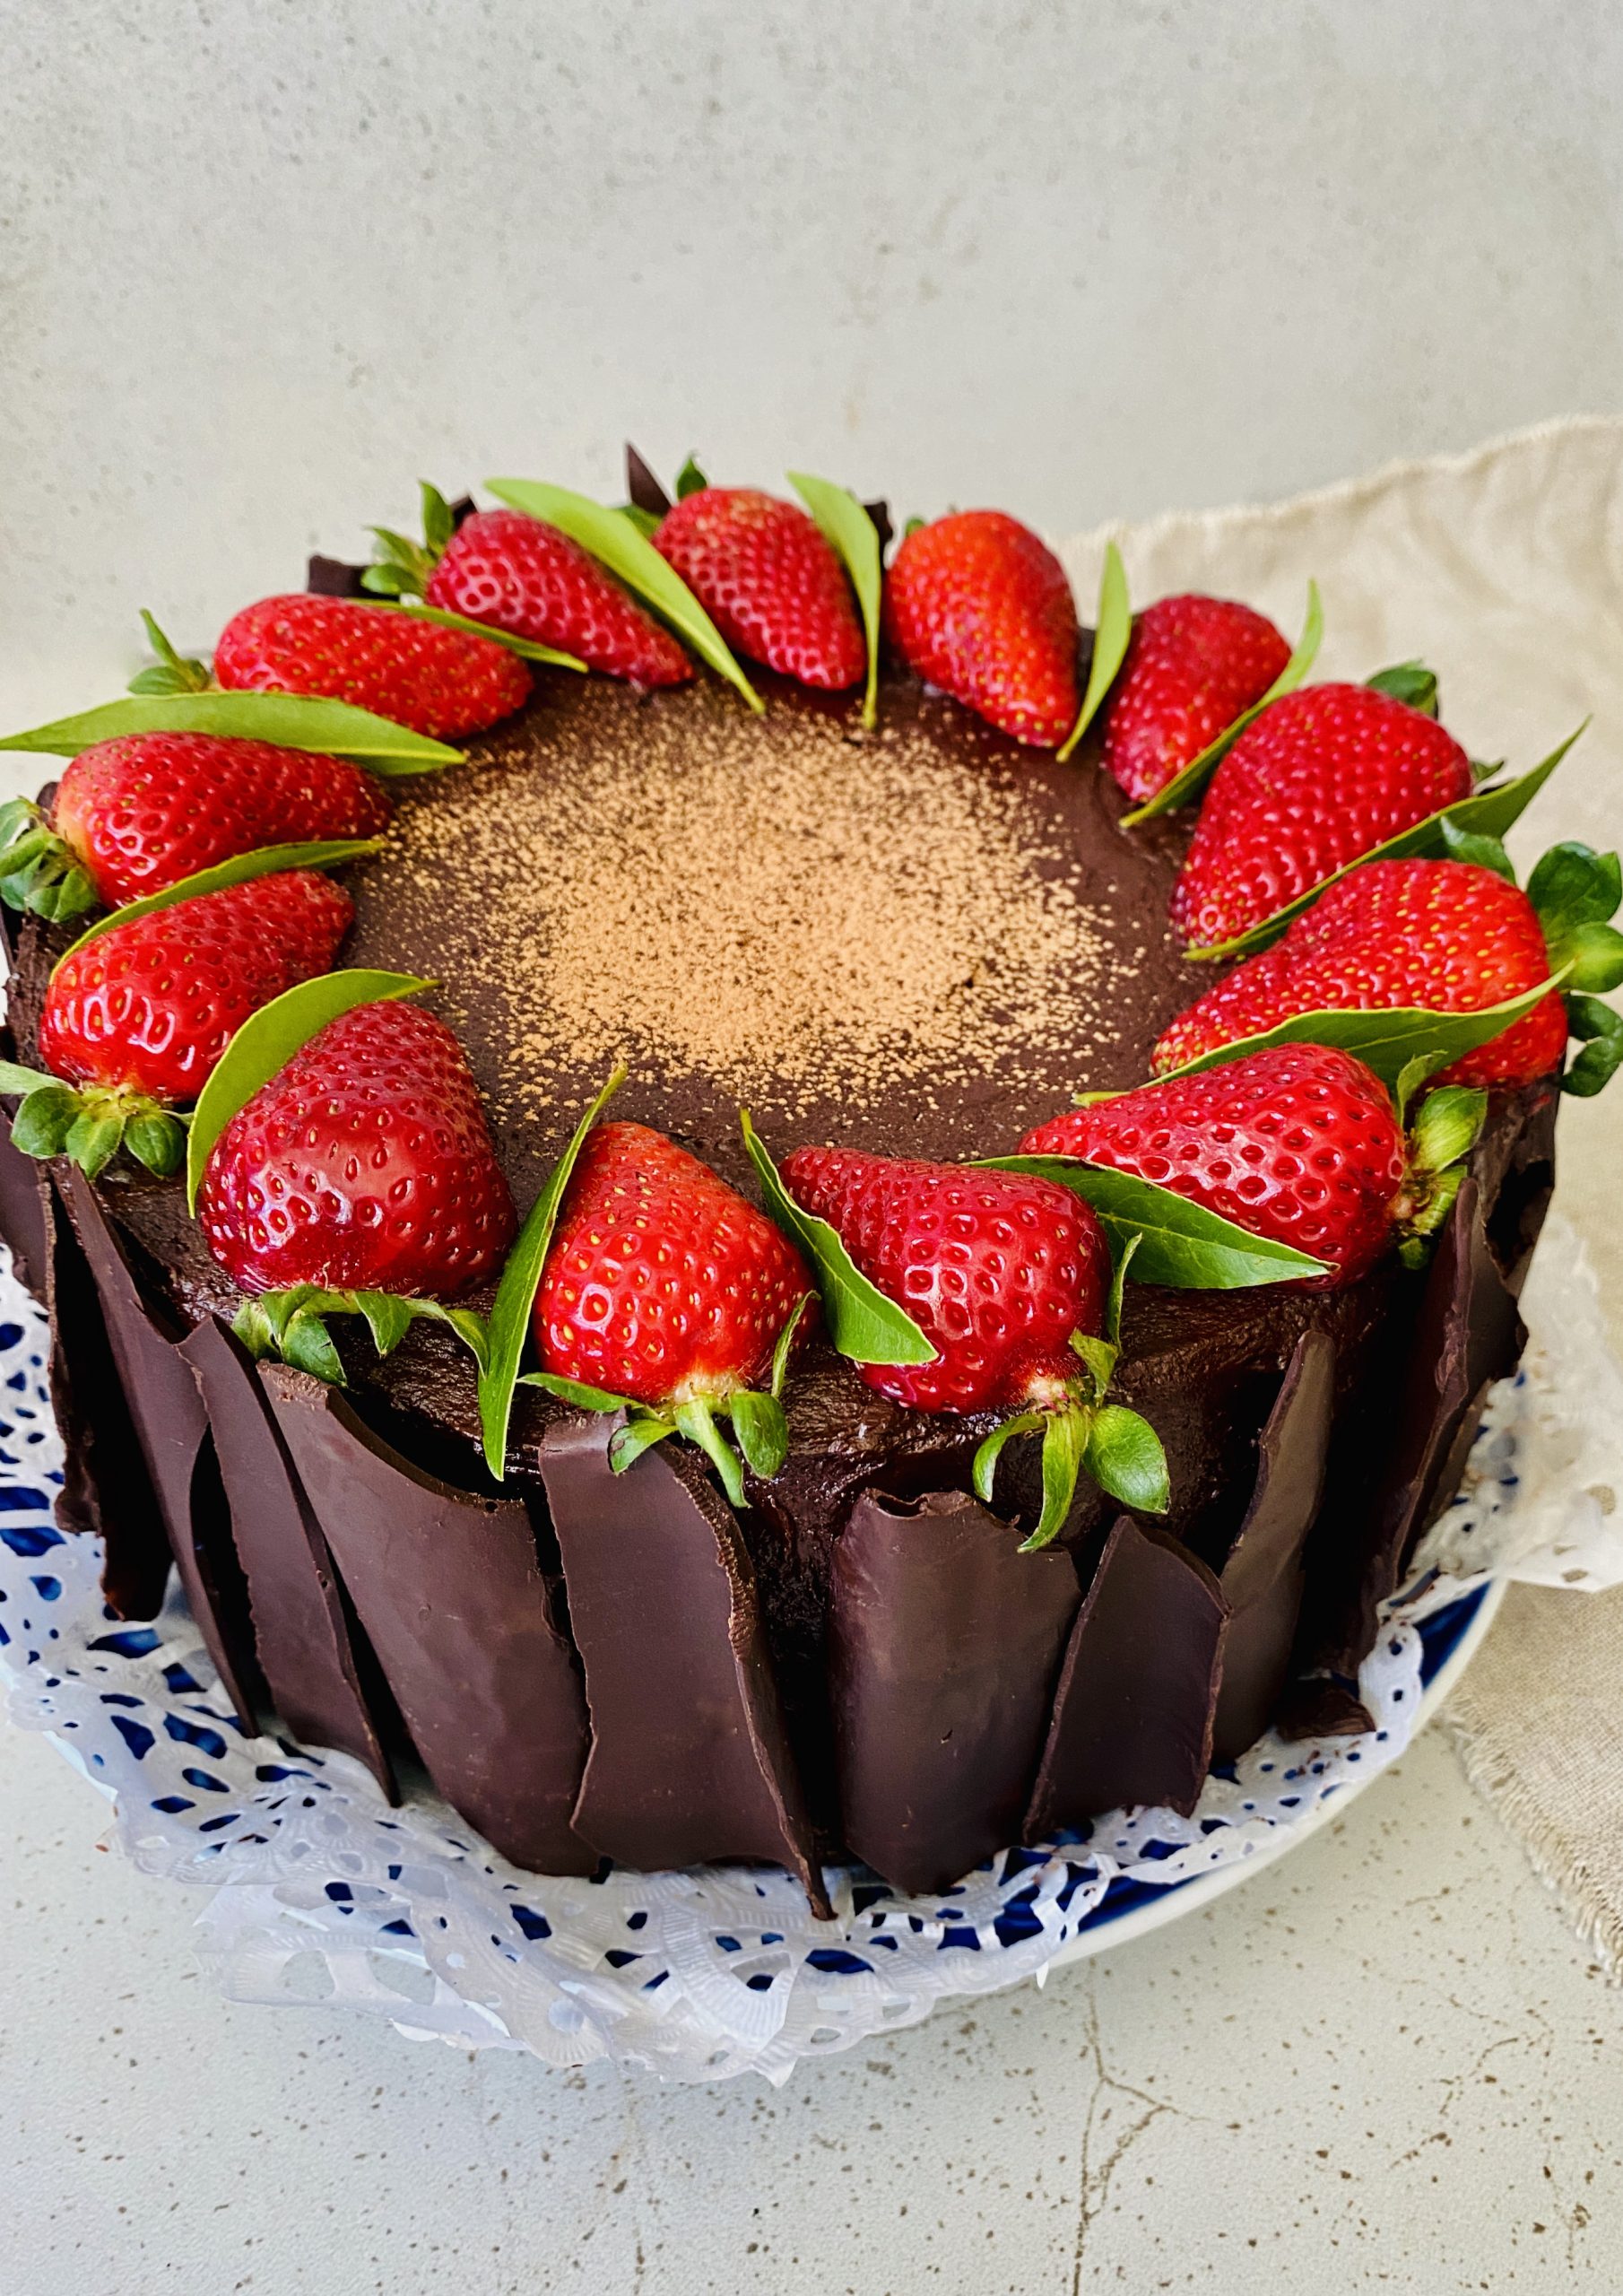 Celebration cake recipes - Recipe Collections - delicious.com.au